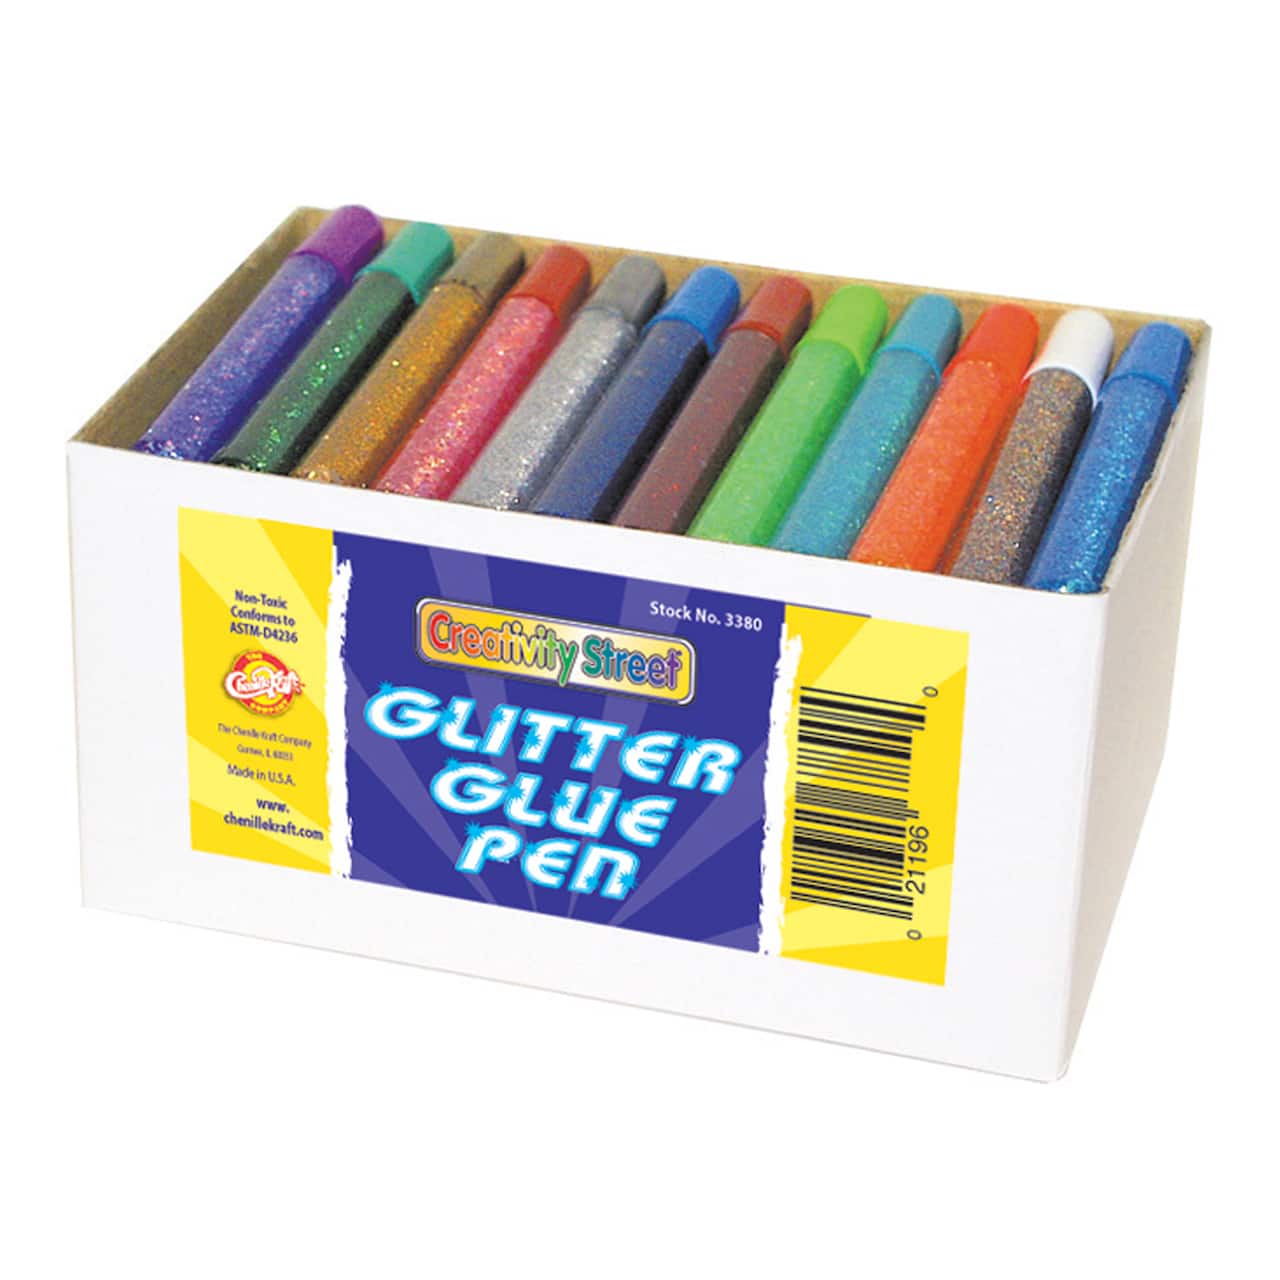 6 Packs: 74 ct. (432 total) Glitter Glue Pens Classpack